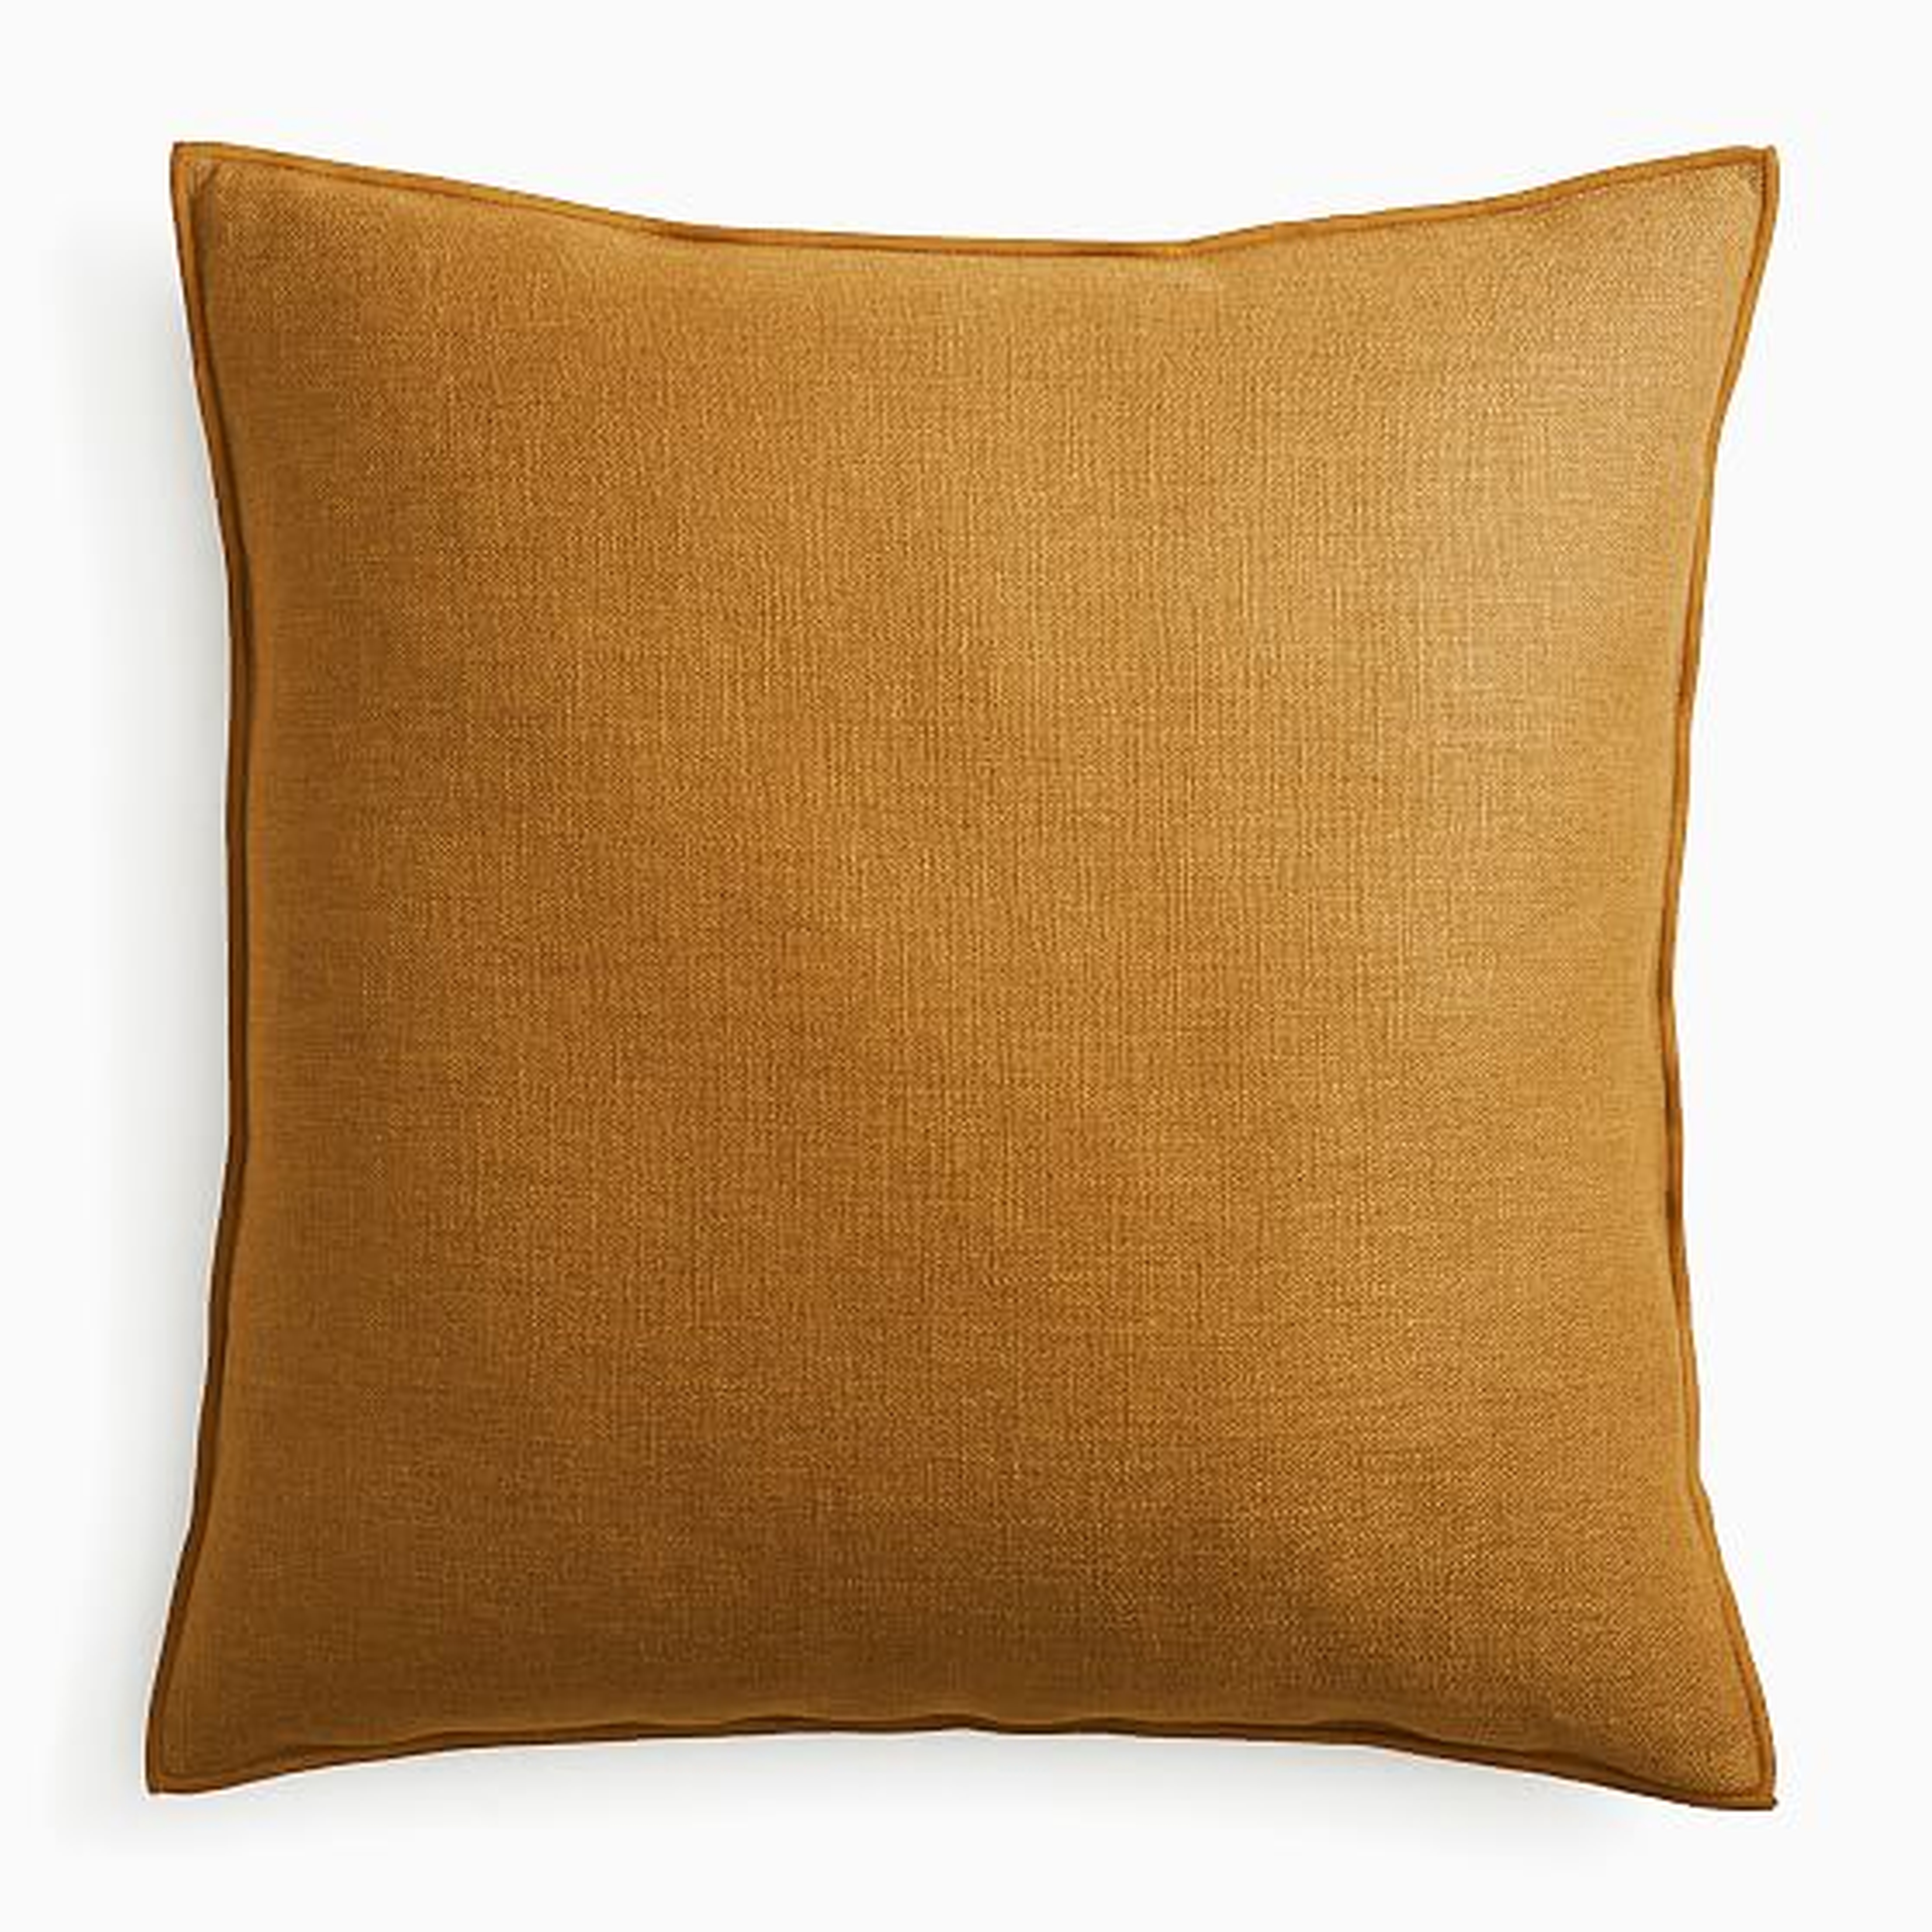 Classic Linen Pillow Cover, 24"x24", Golden Oak, Set of 2 - West Elm